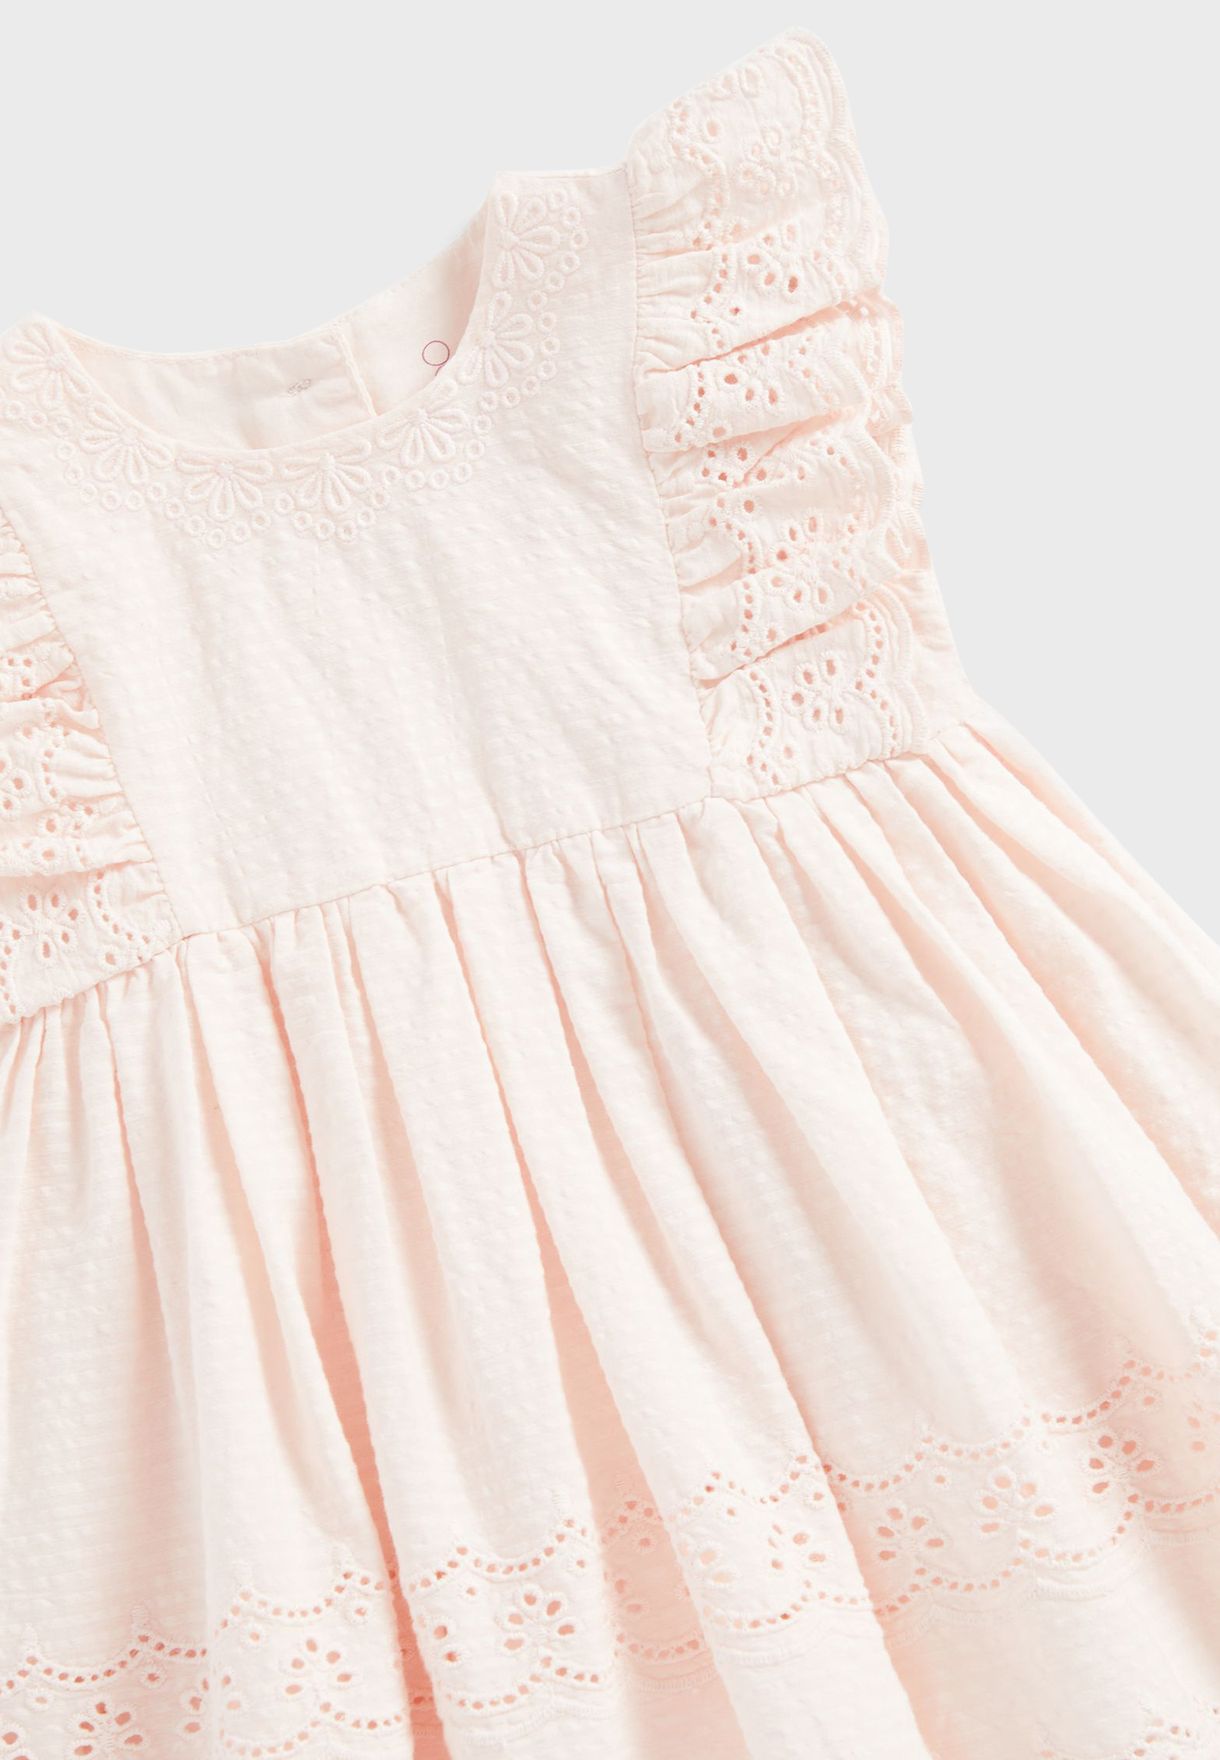 Infant Embroidered Dress & Knicker Set